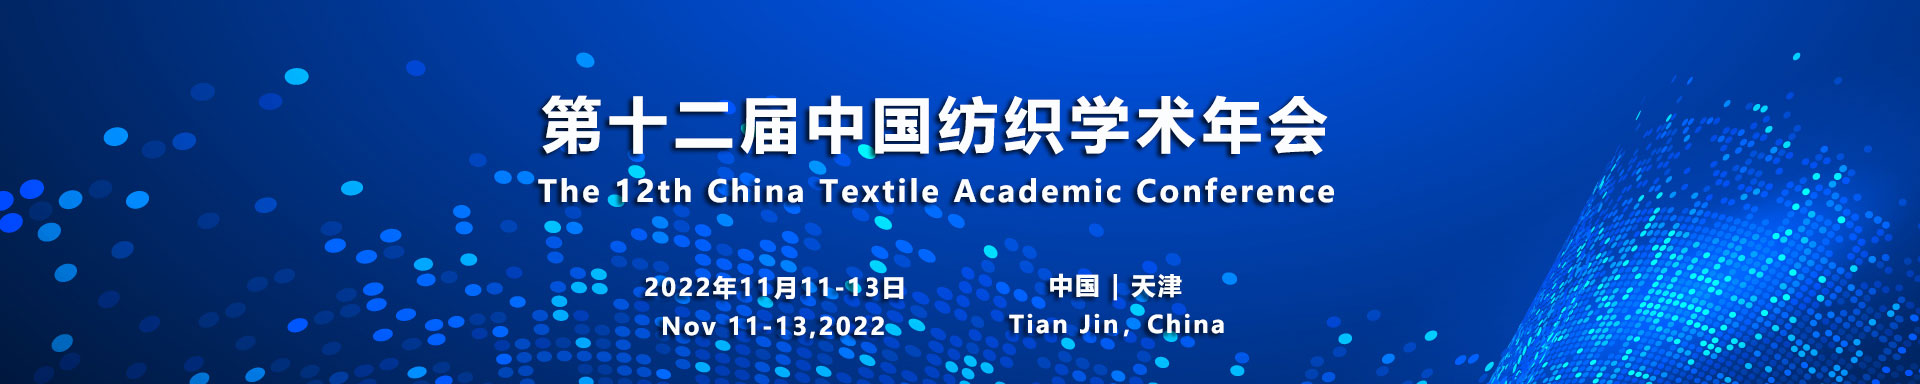 第十二届中国纺织学术年会